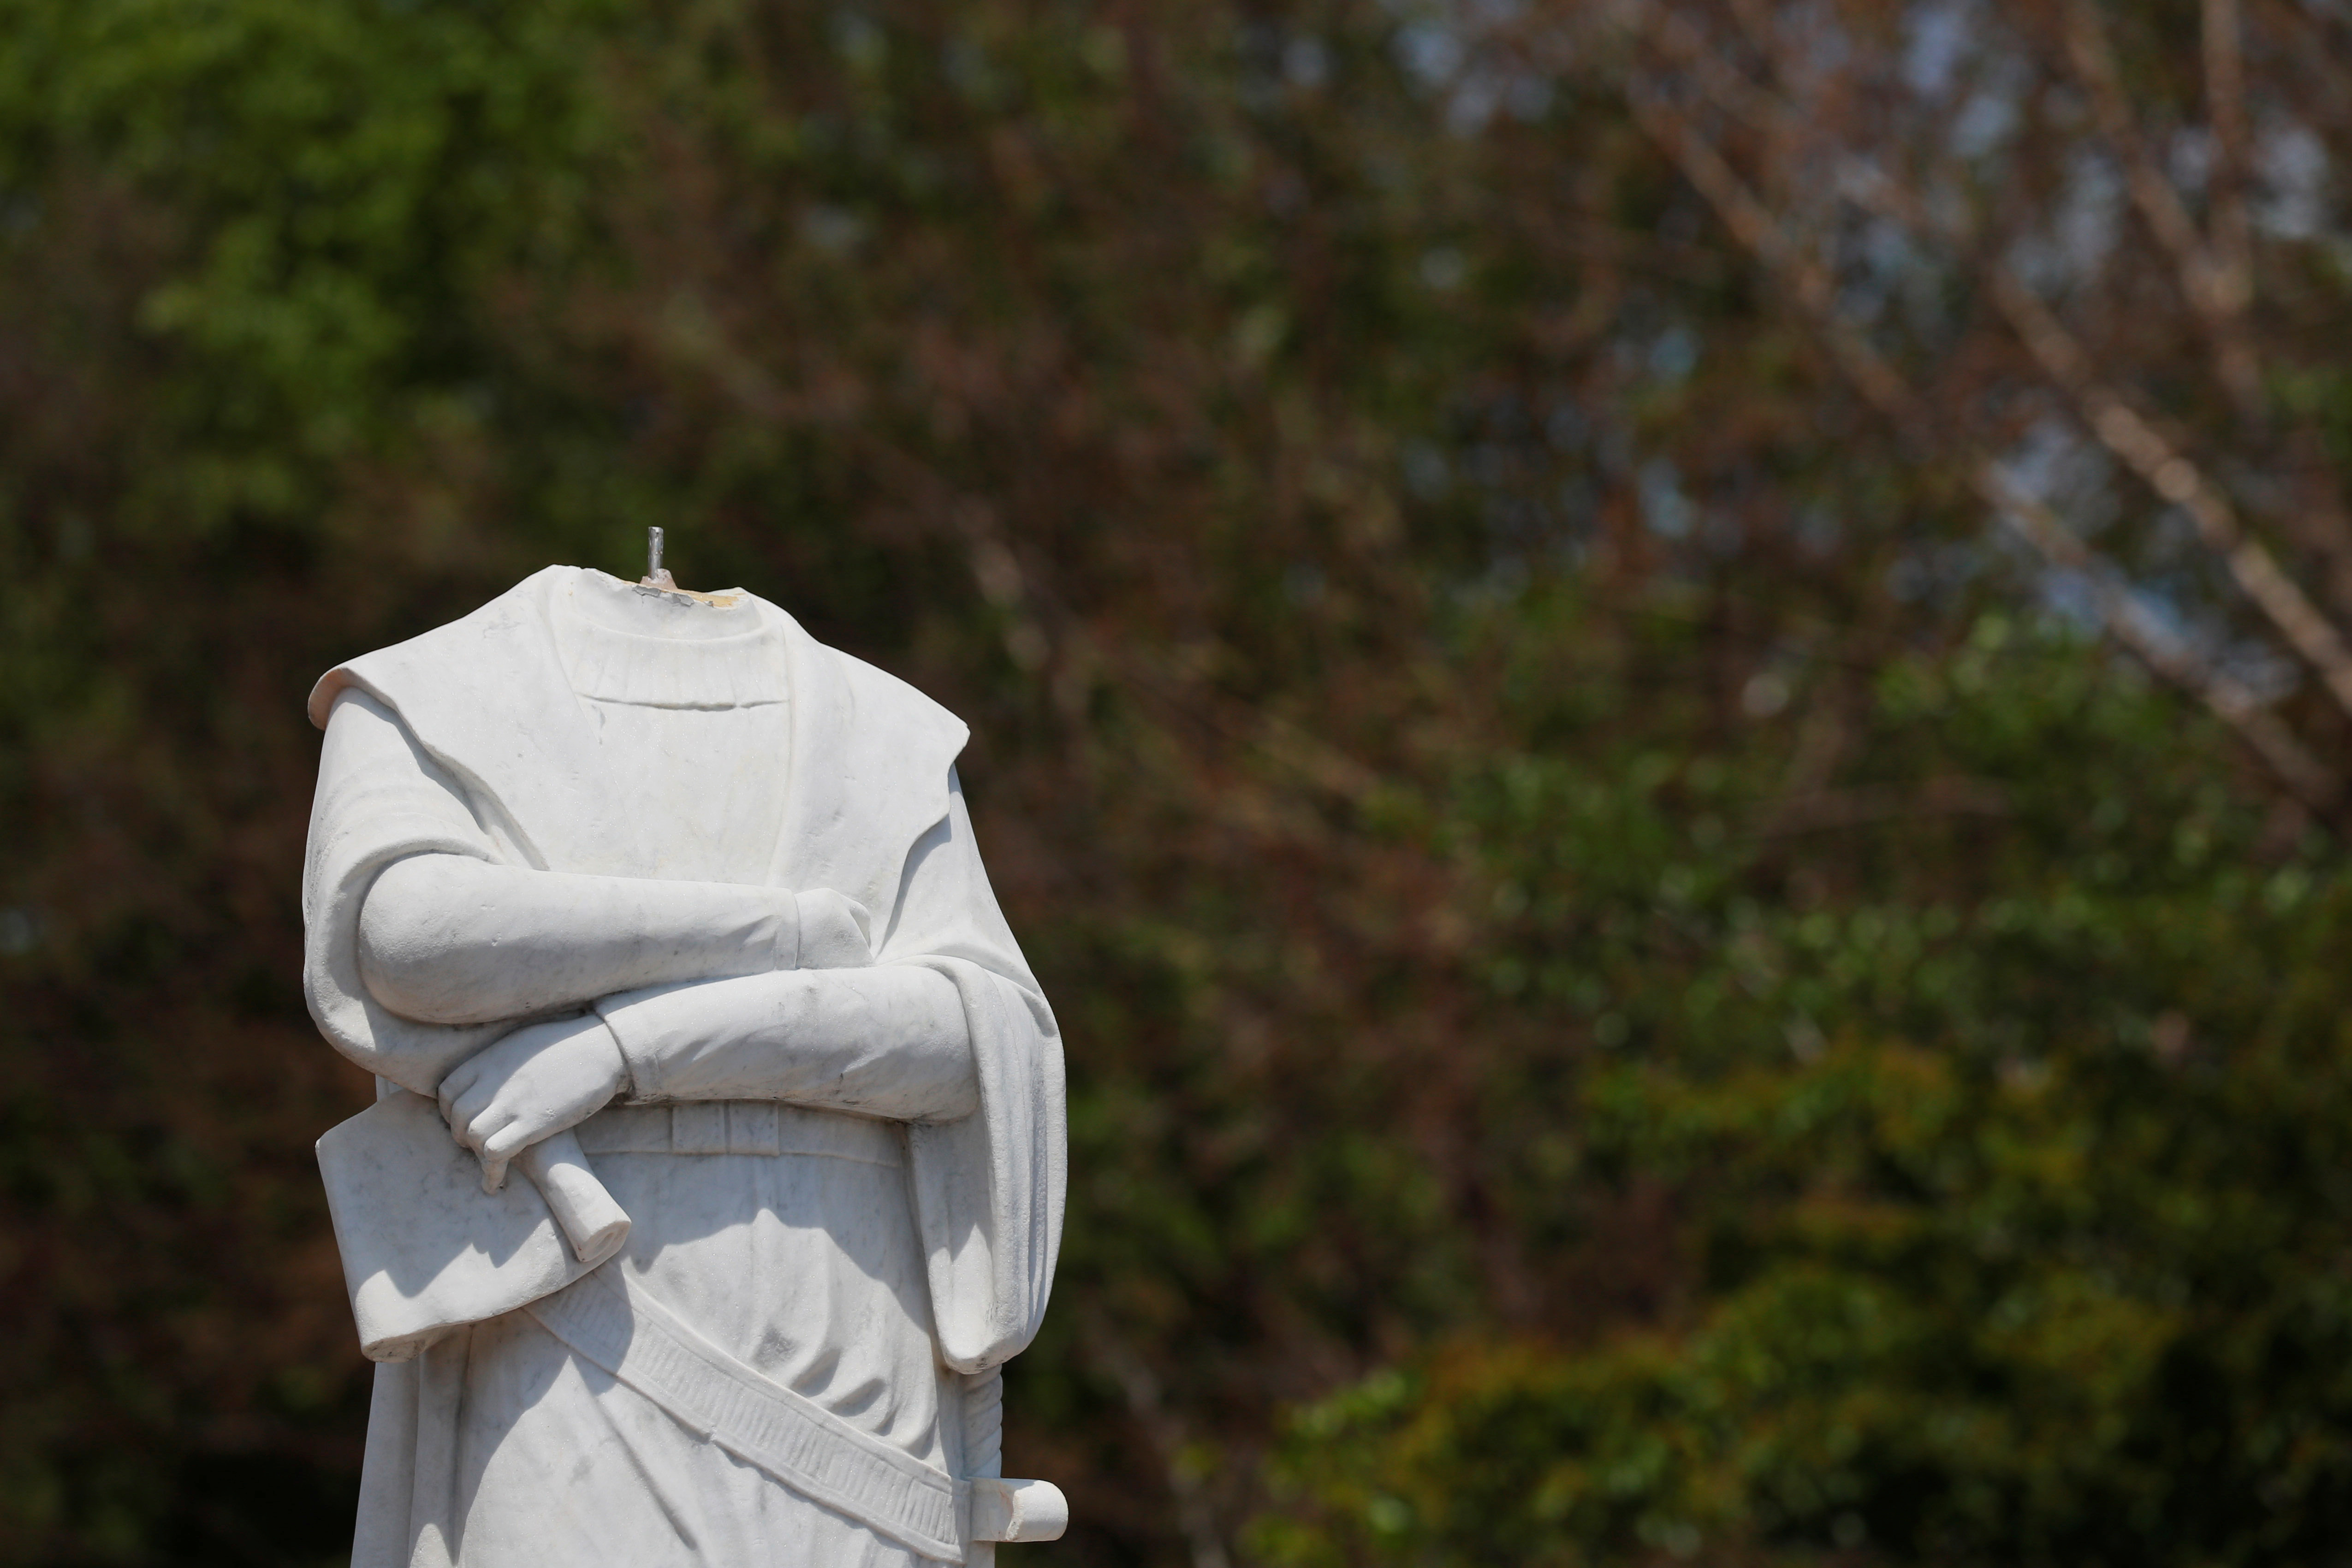 La cabeza de una estatua de Cristobal Colón fue arrancada durantlas protestas contra la desigualdad racial en Boston, Massachusetts, EE.UU. (REUTERS / Brian Snyder)